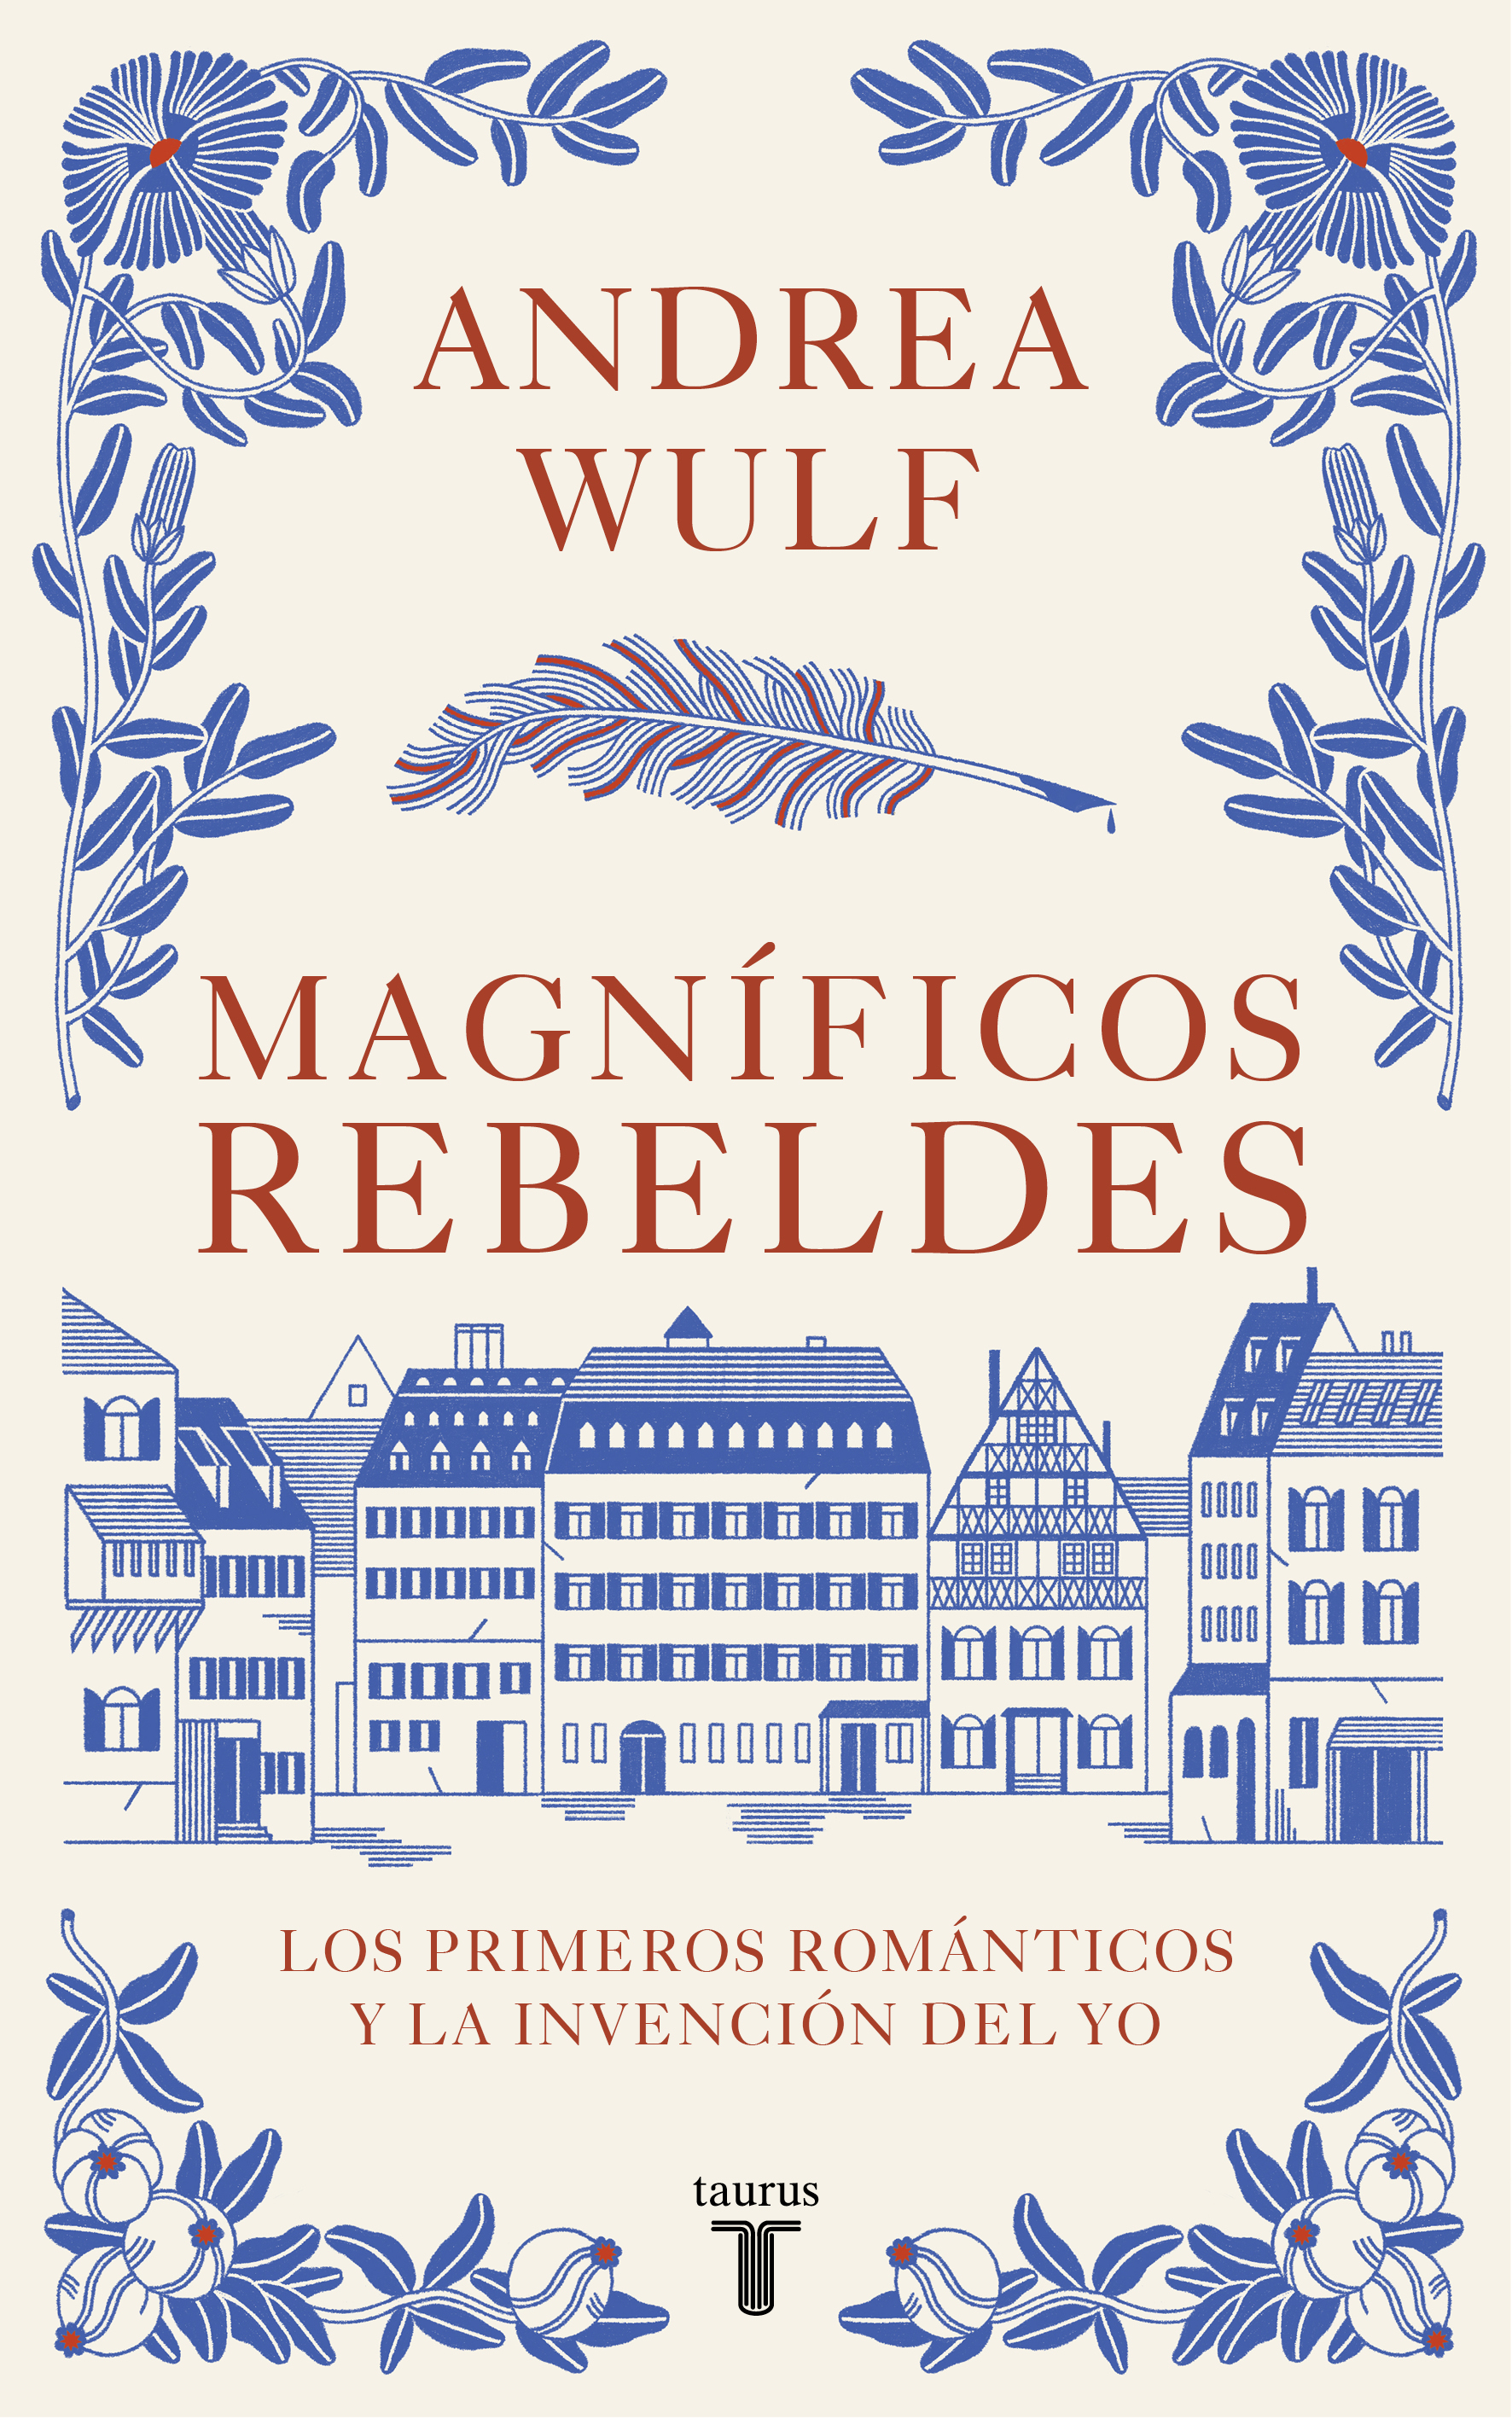 Magníficos rebeldes”: Andrea Wulf le da un vistazo al origen del romanticismo y al magnífico grupo de creadores que lo impulsaron - Infobae